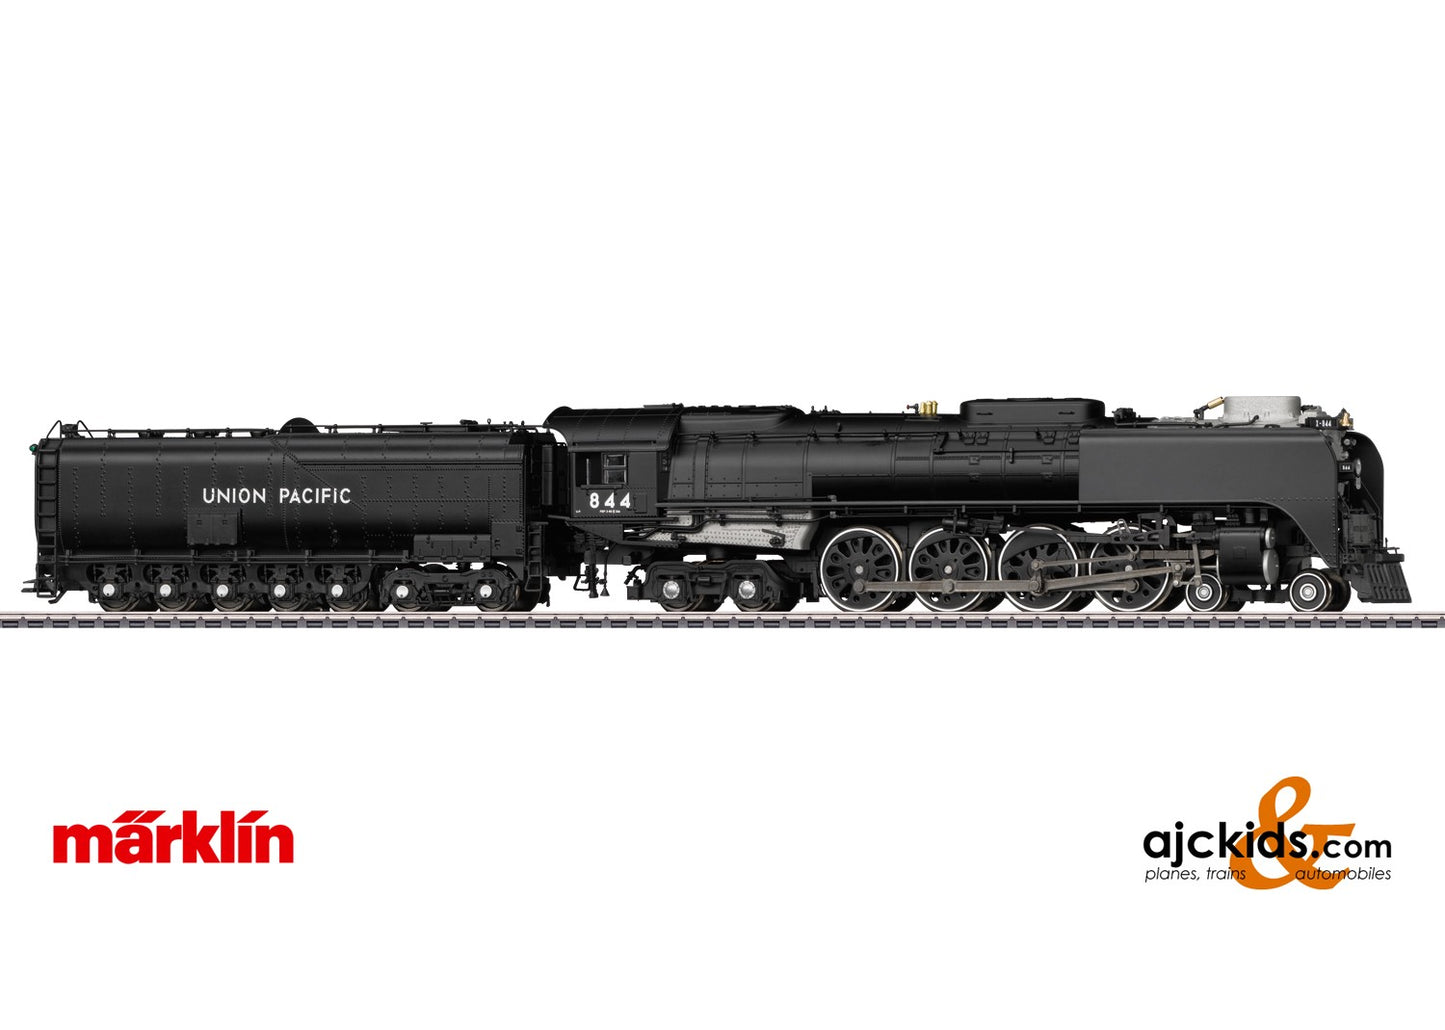 Marklin 37984 - Union Pacific UP Class 800 Steam Locomotive at Ajckids.com, the Marklin super store!